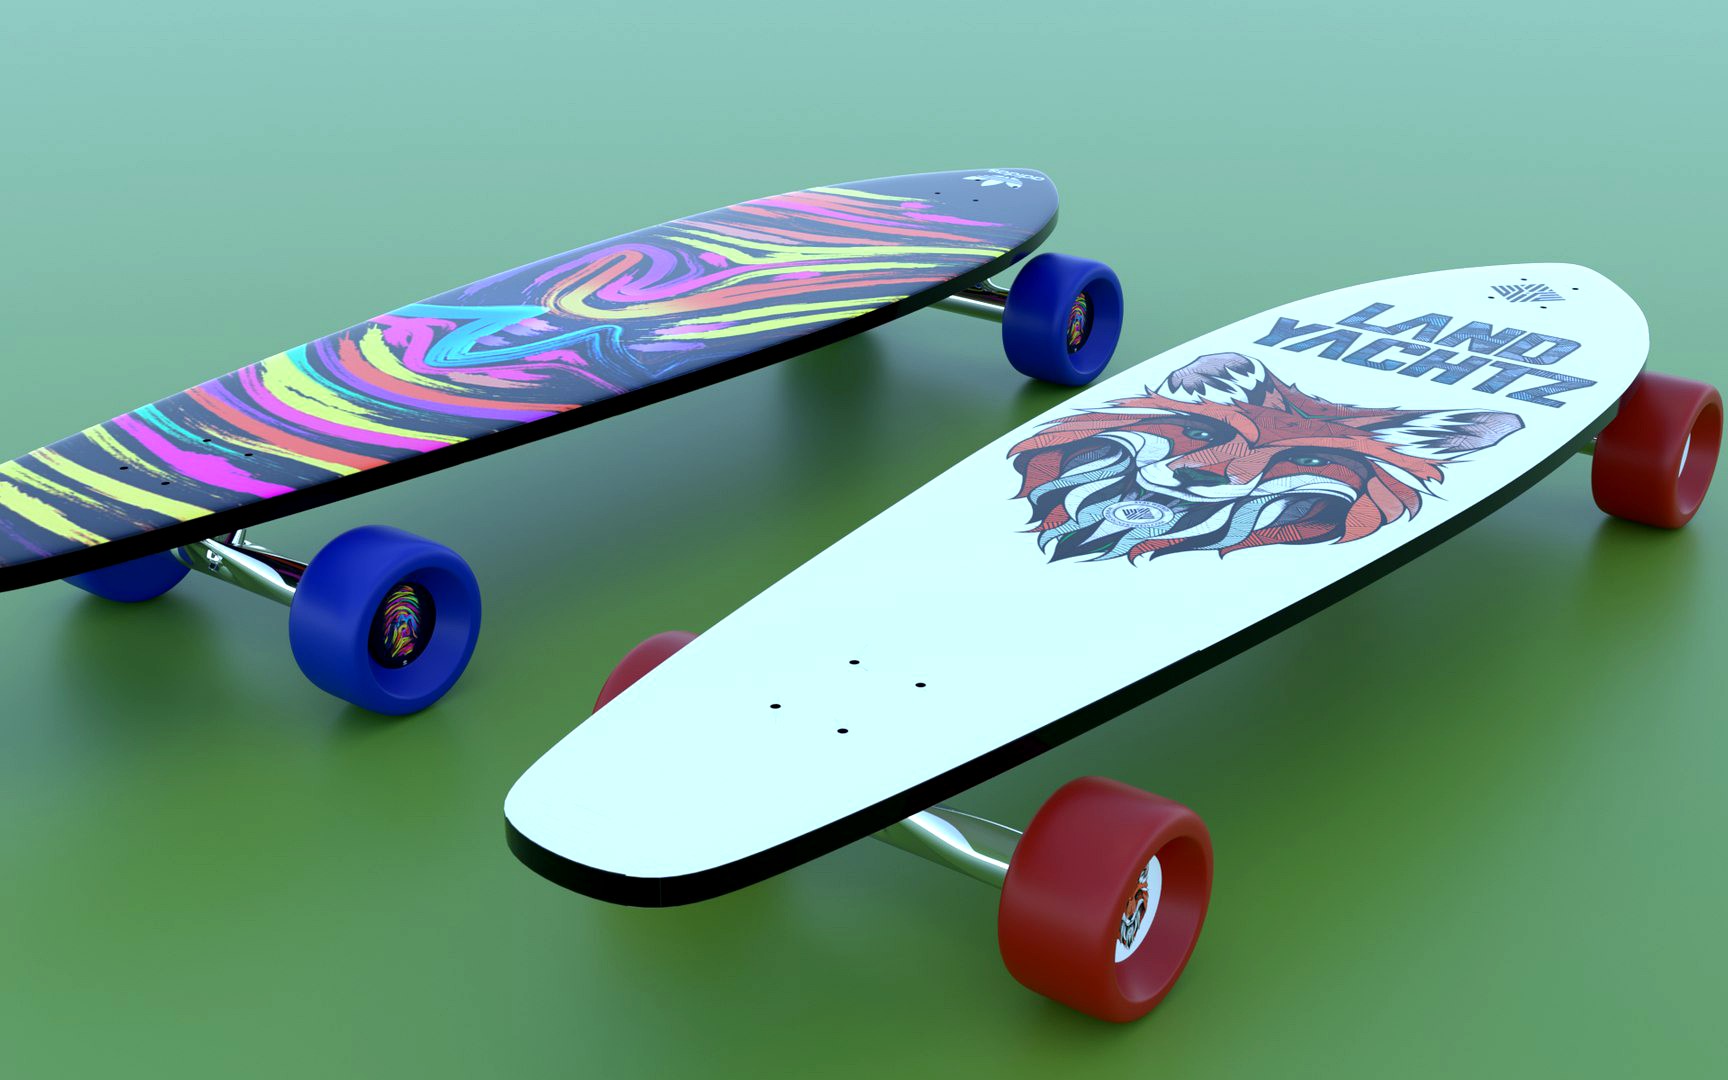 Realisitc Skateboard Longboard 3D model